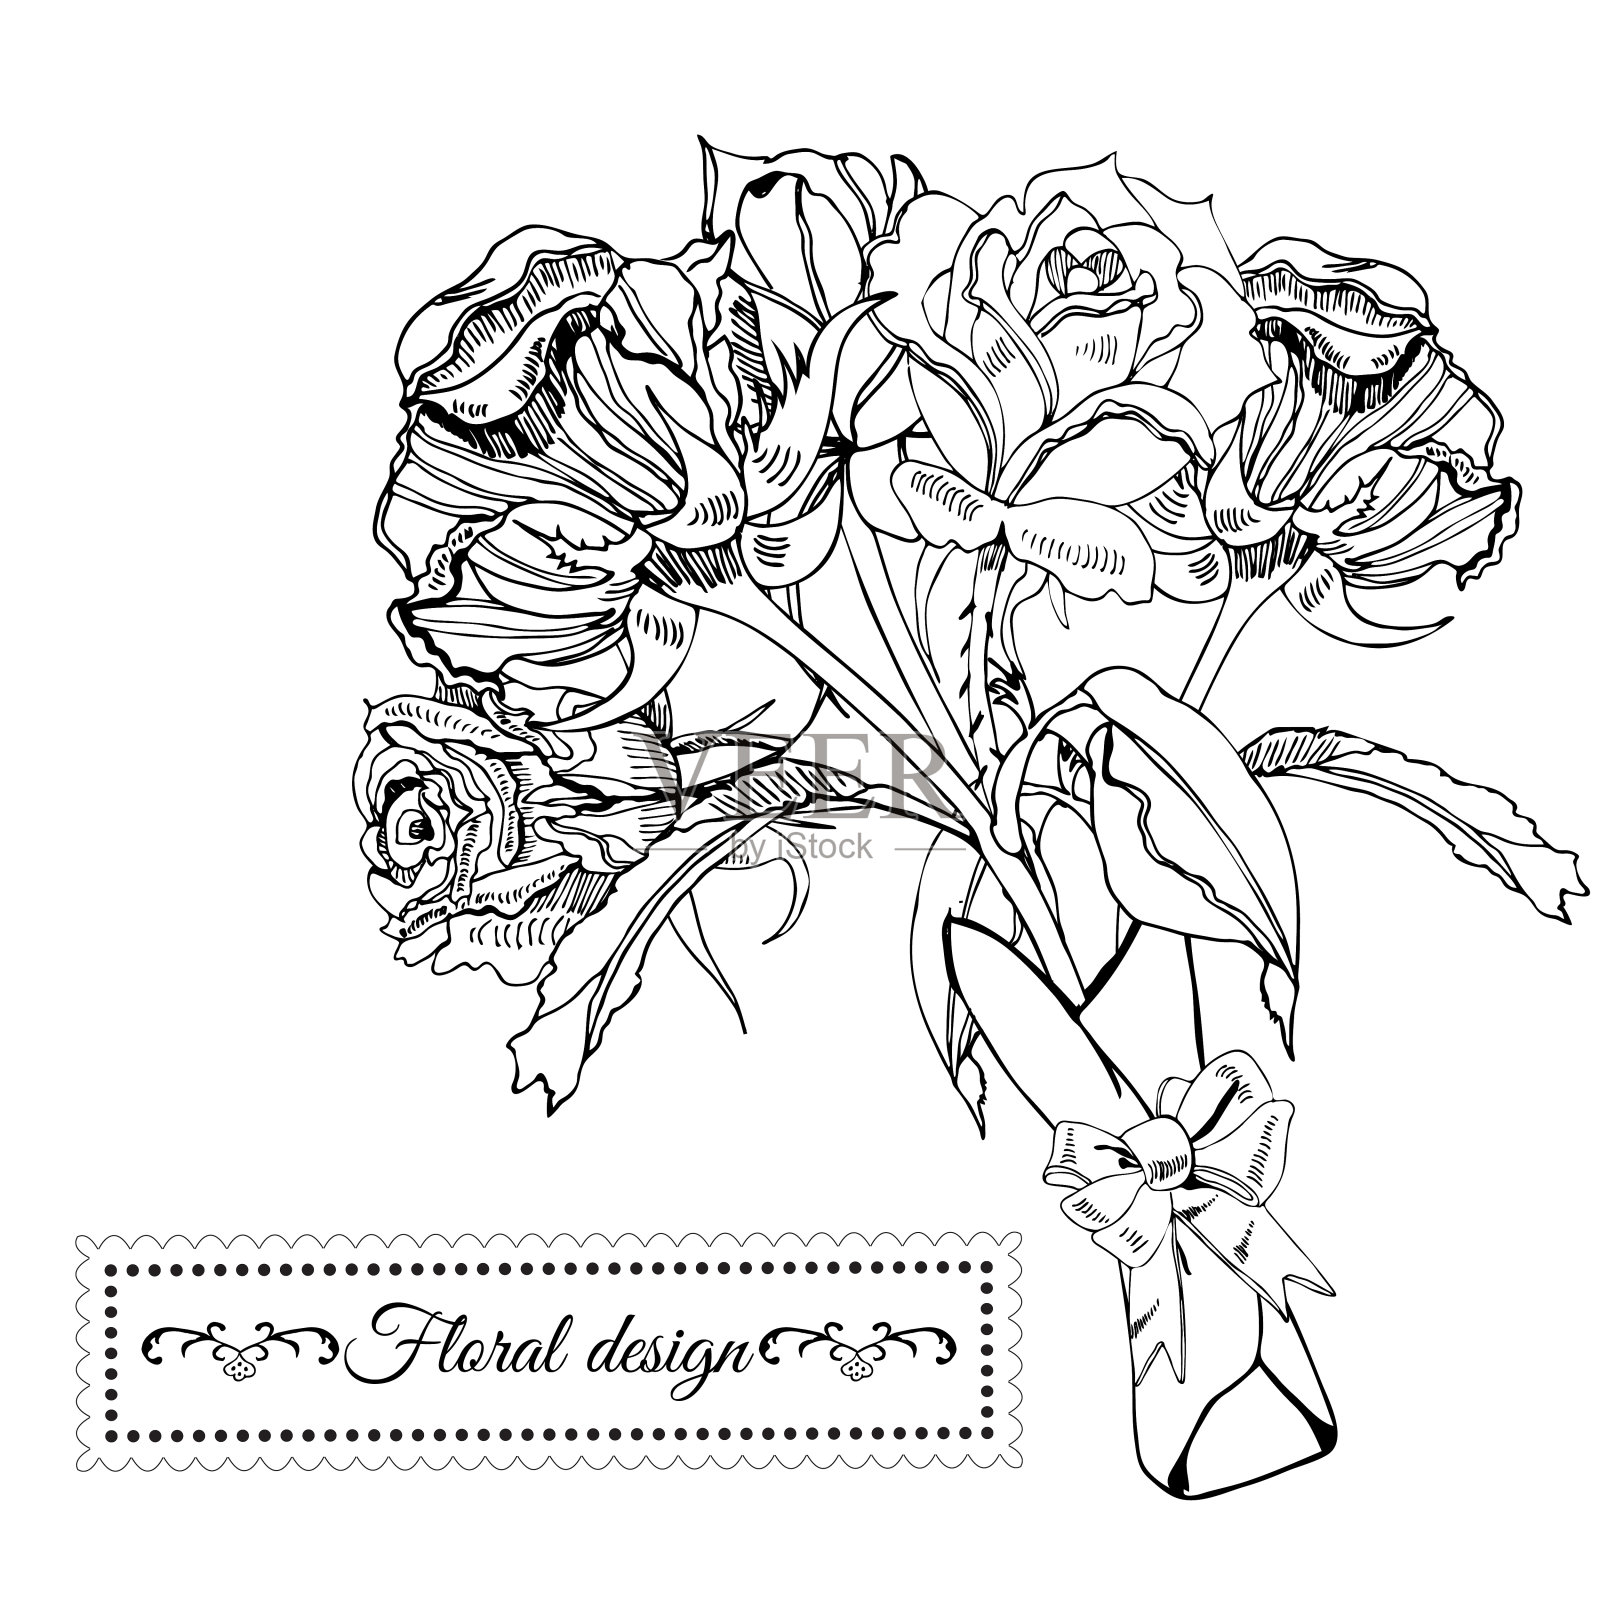 鲜花盛开的单色玫瑰的邀请或贺卡模板。手绘水墨画在白色背景上。插画图片素材